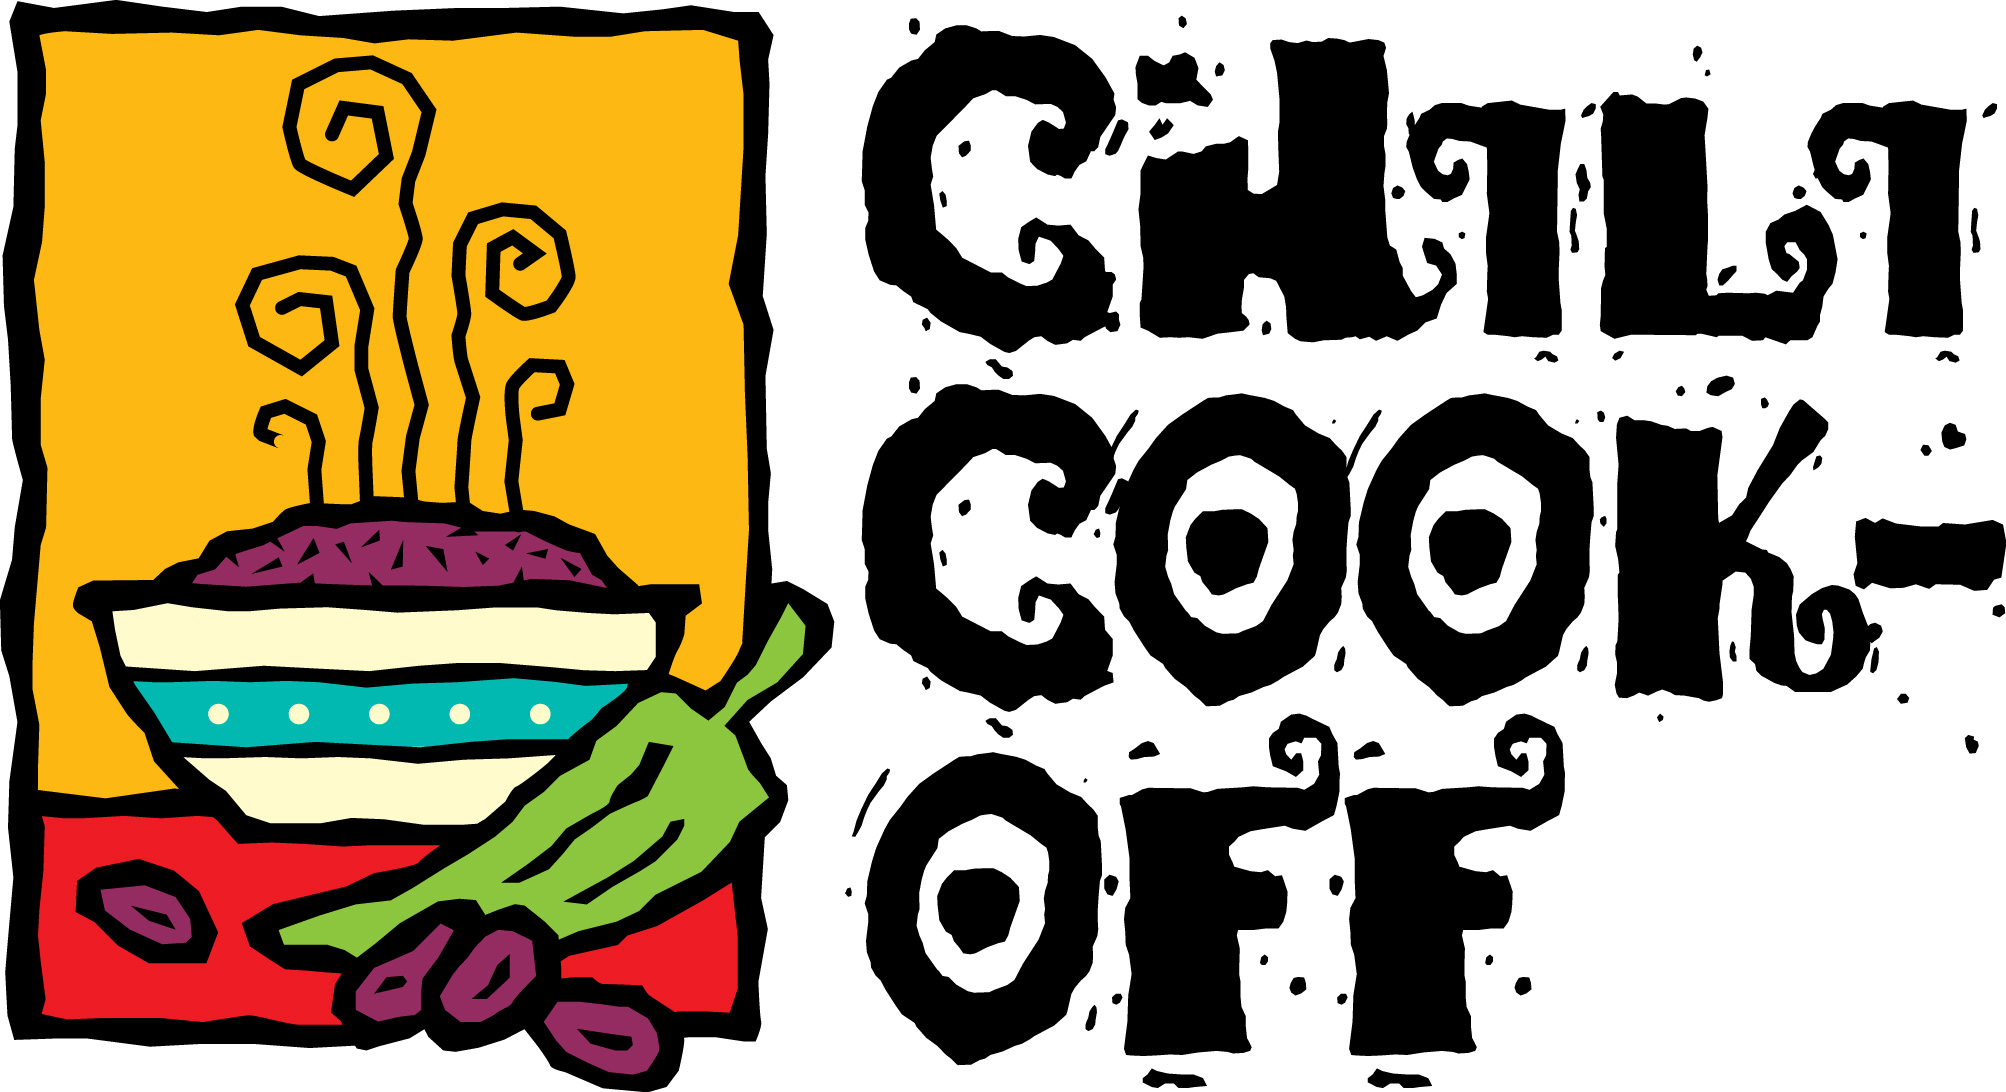 Chili Cook Off Borders Clipar - Chili Cook Off Clip Art